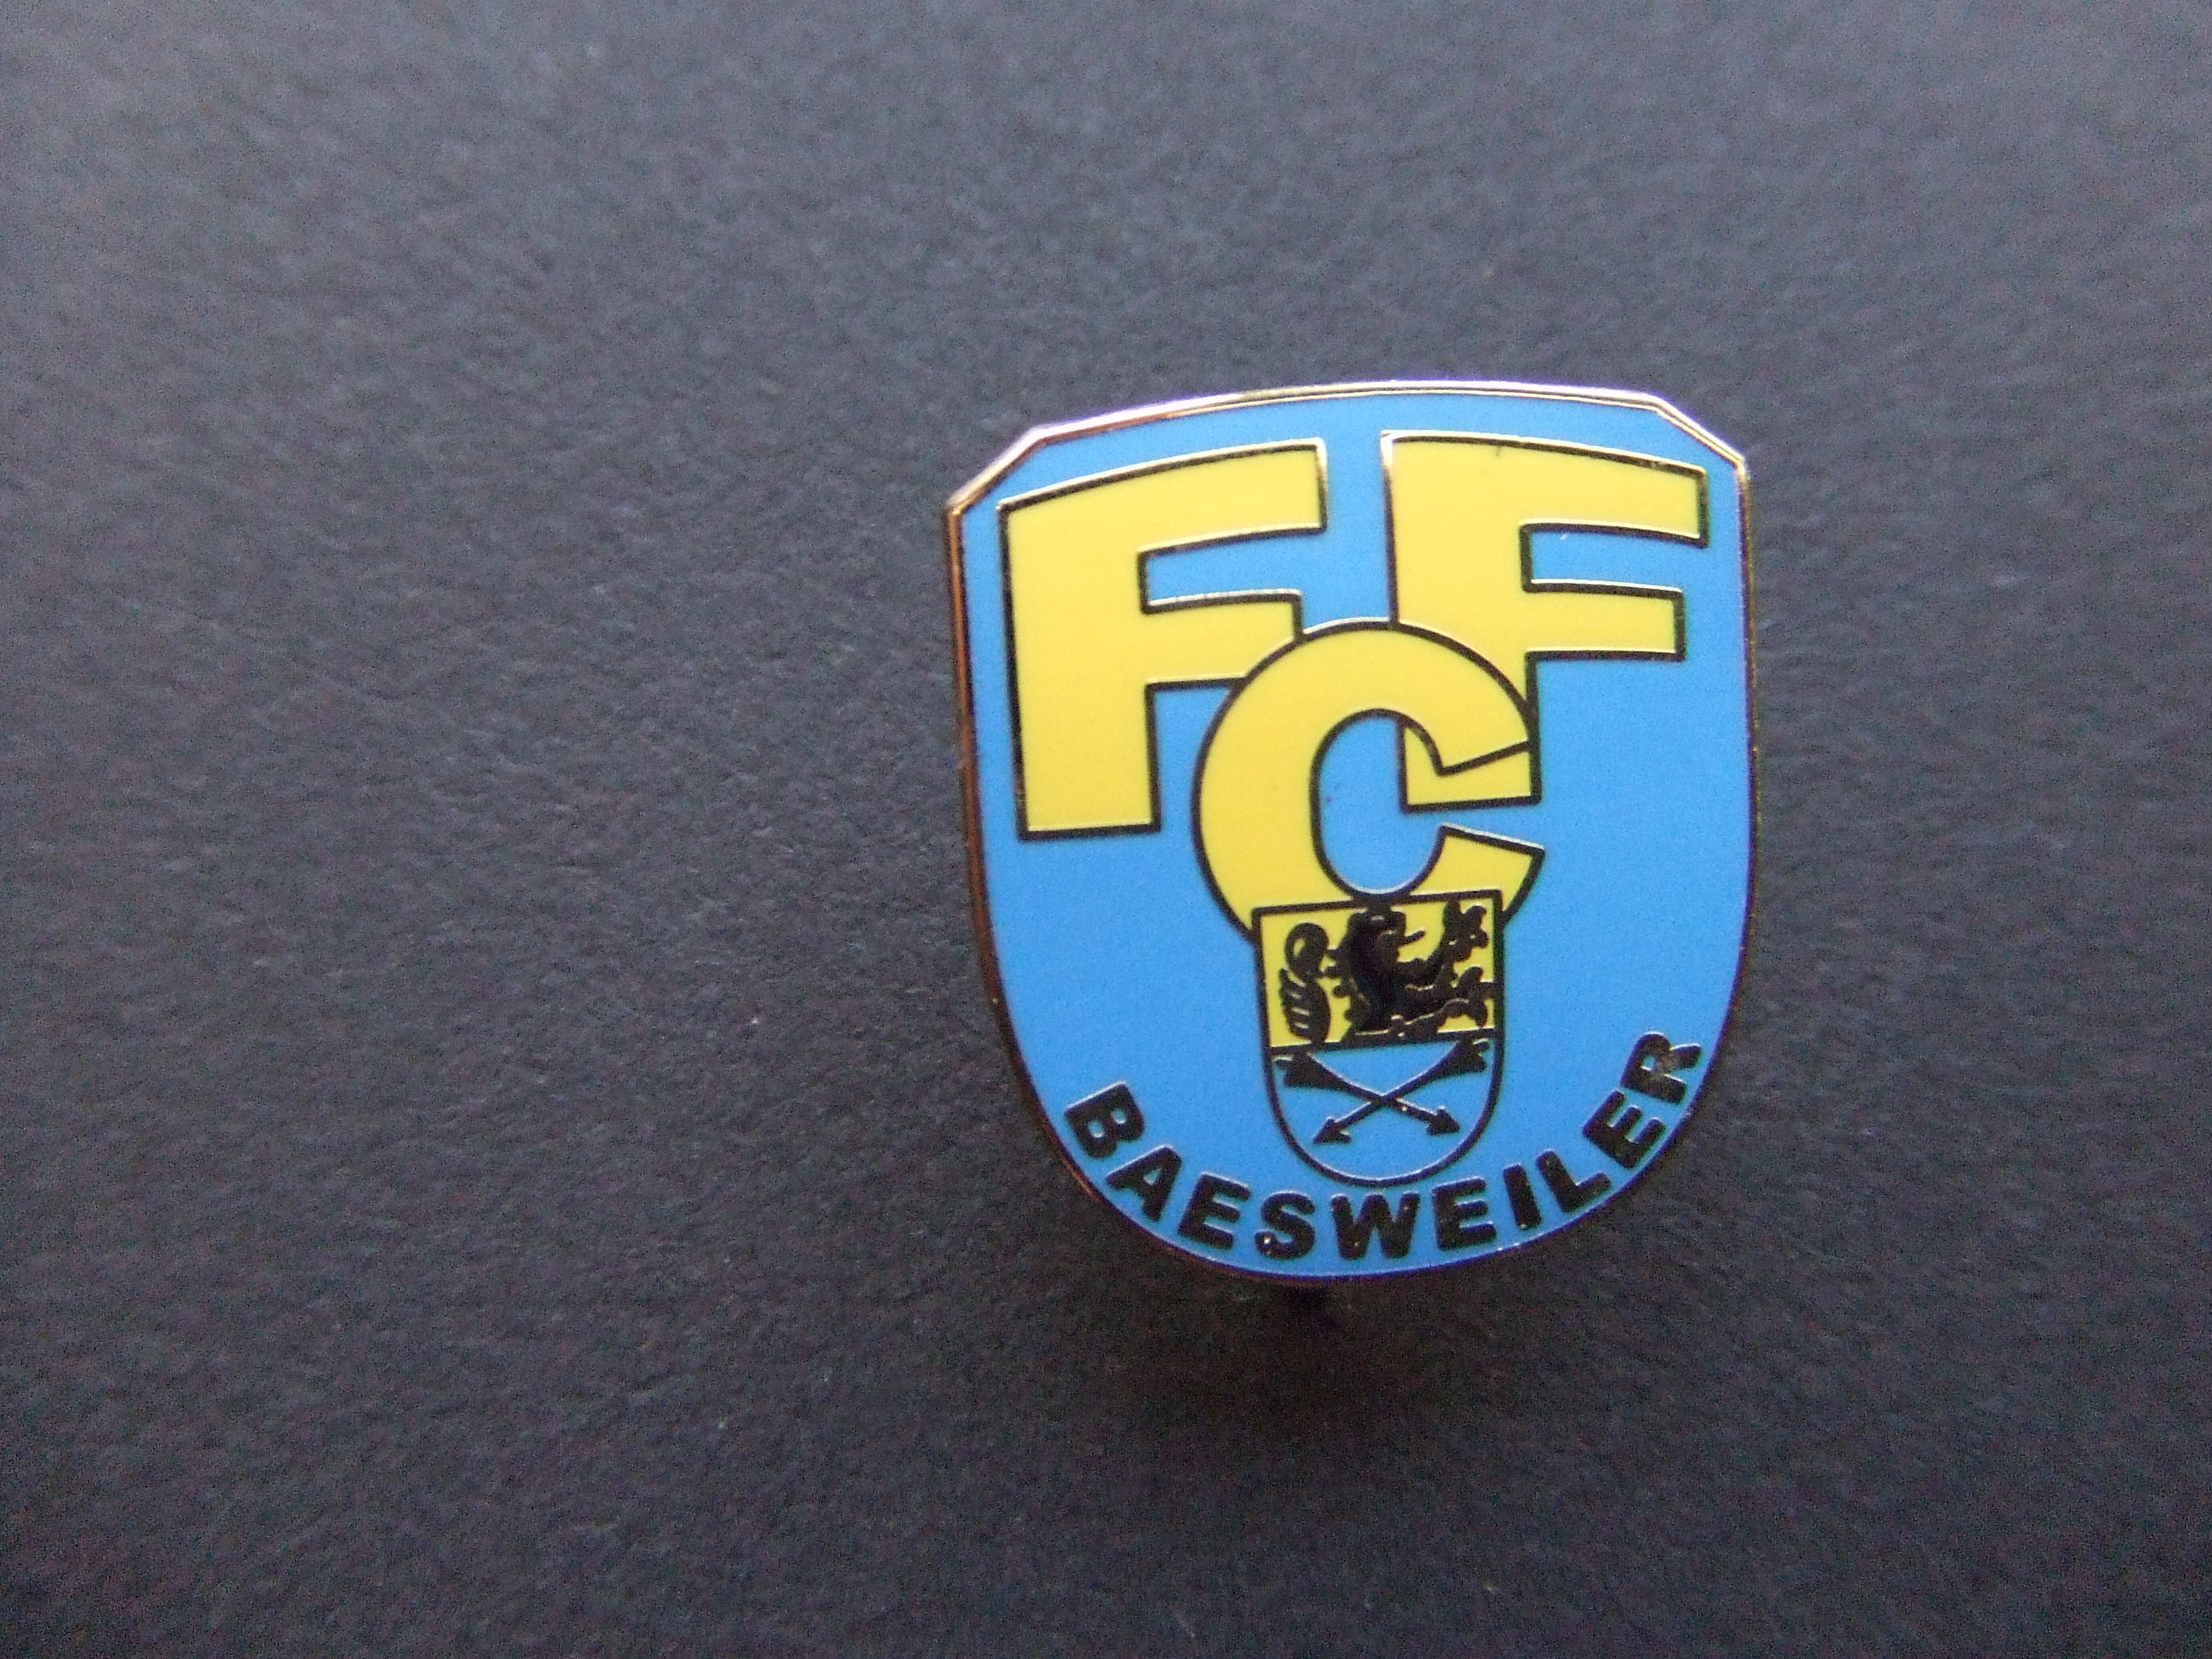 FFC Baesweiler voetbalclub Duitsland